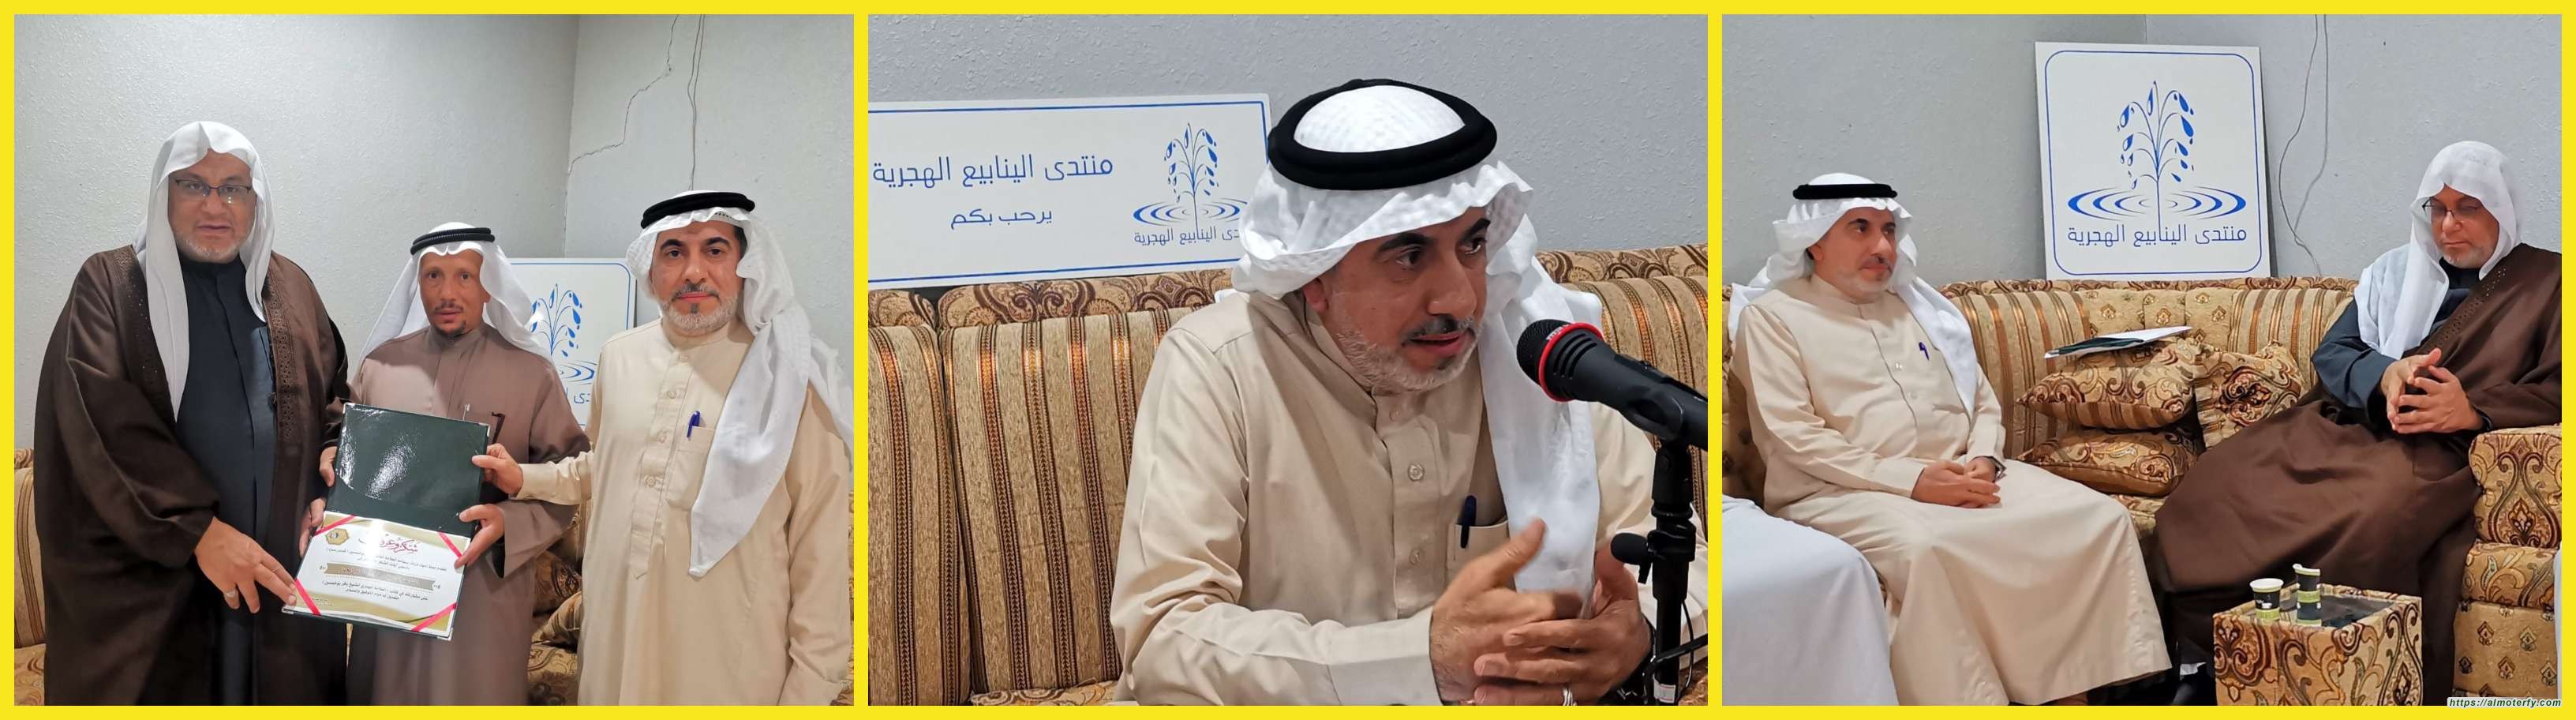 لجنة إحياء تراث الشيخ باقر بوخمسين تكرم رئيس منتدى الينابيع الهَجَرية